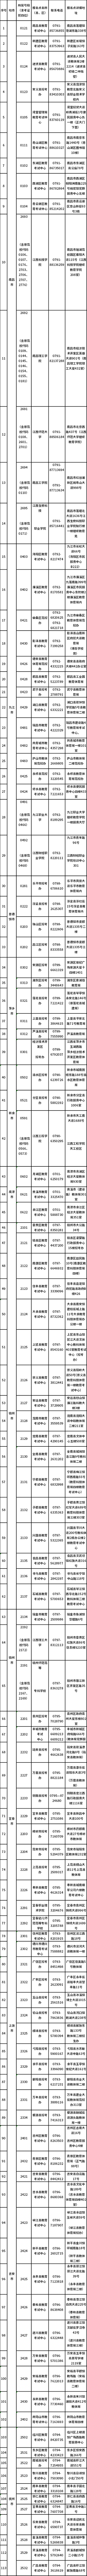 江西省自学考试报名点（初审单位）联络表